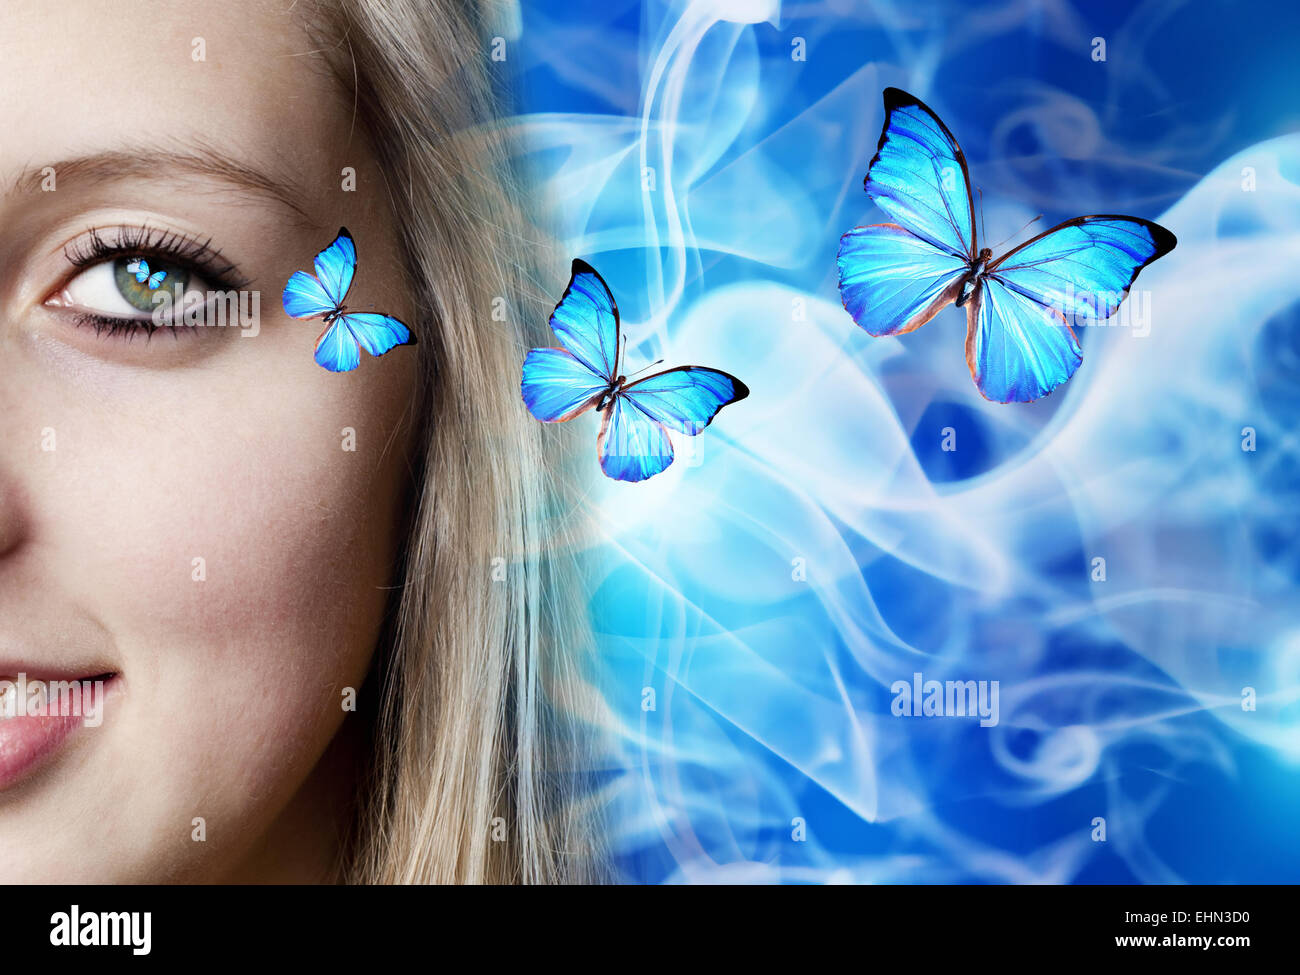 Chica rubia con mariposas azules saliendo de sus ojos Fotografía de stock -  Alamy